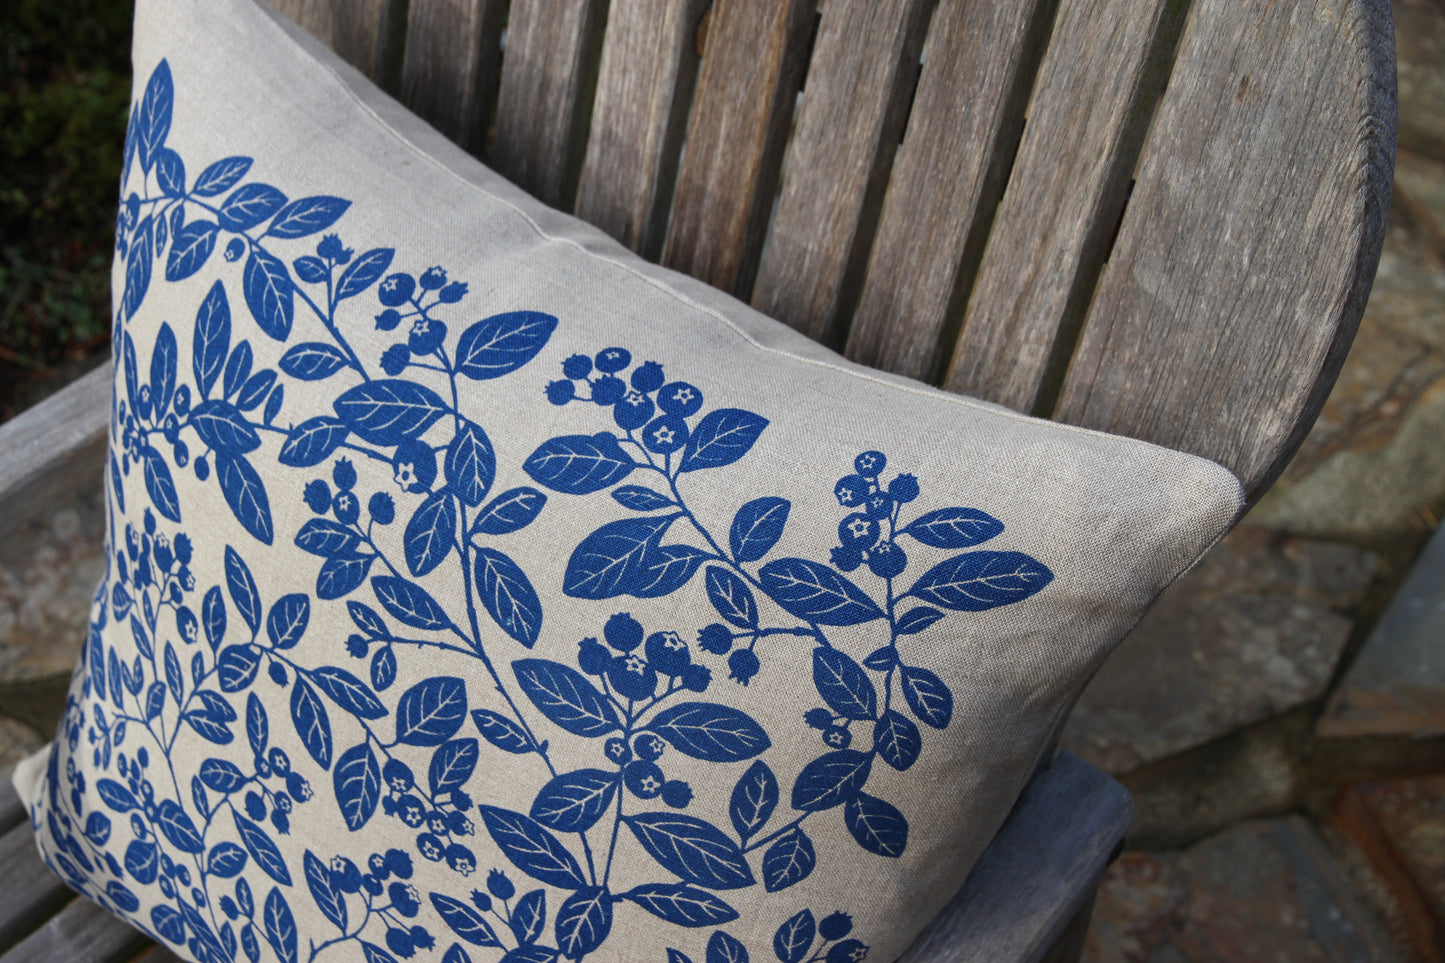 20" Blueberry Linen Pillow in Summer Blue